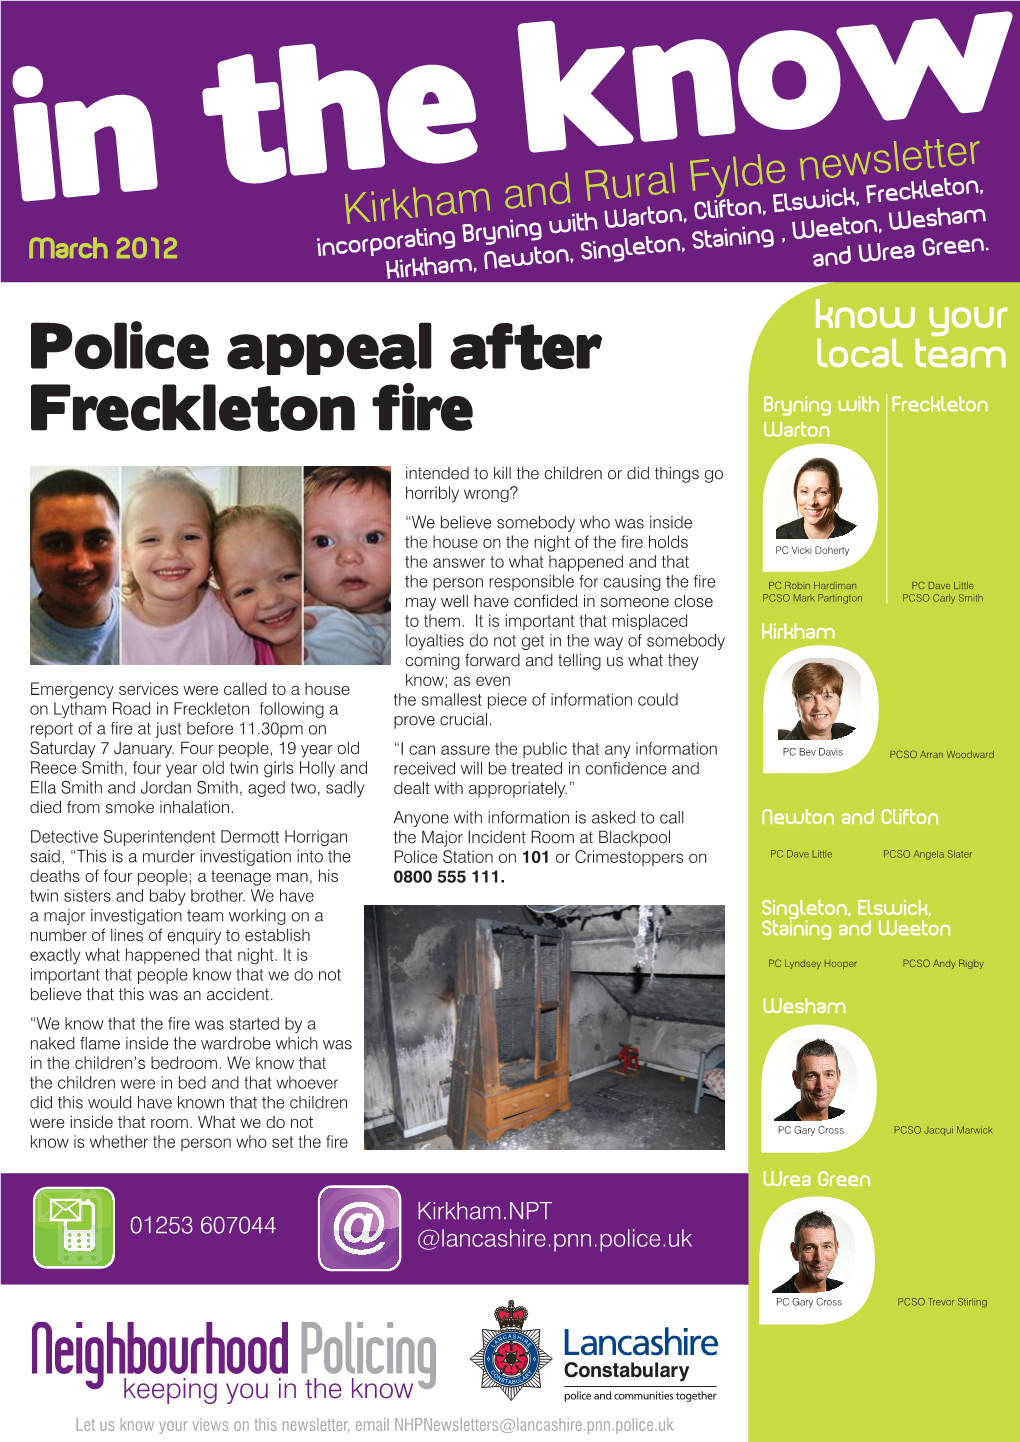 Police Appeal After Freckleton Fire